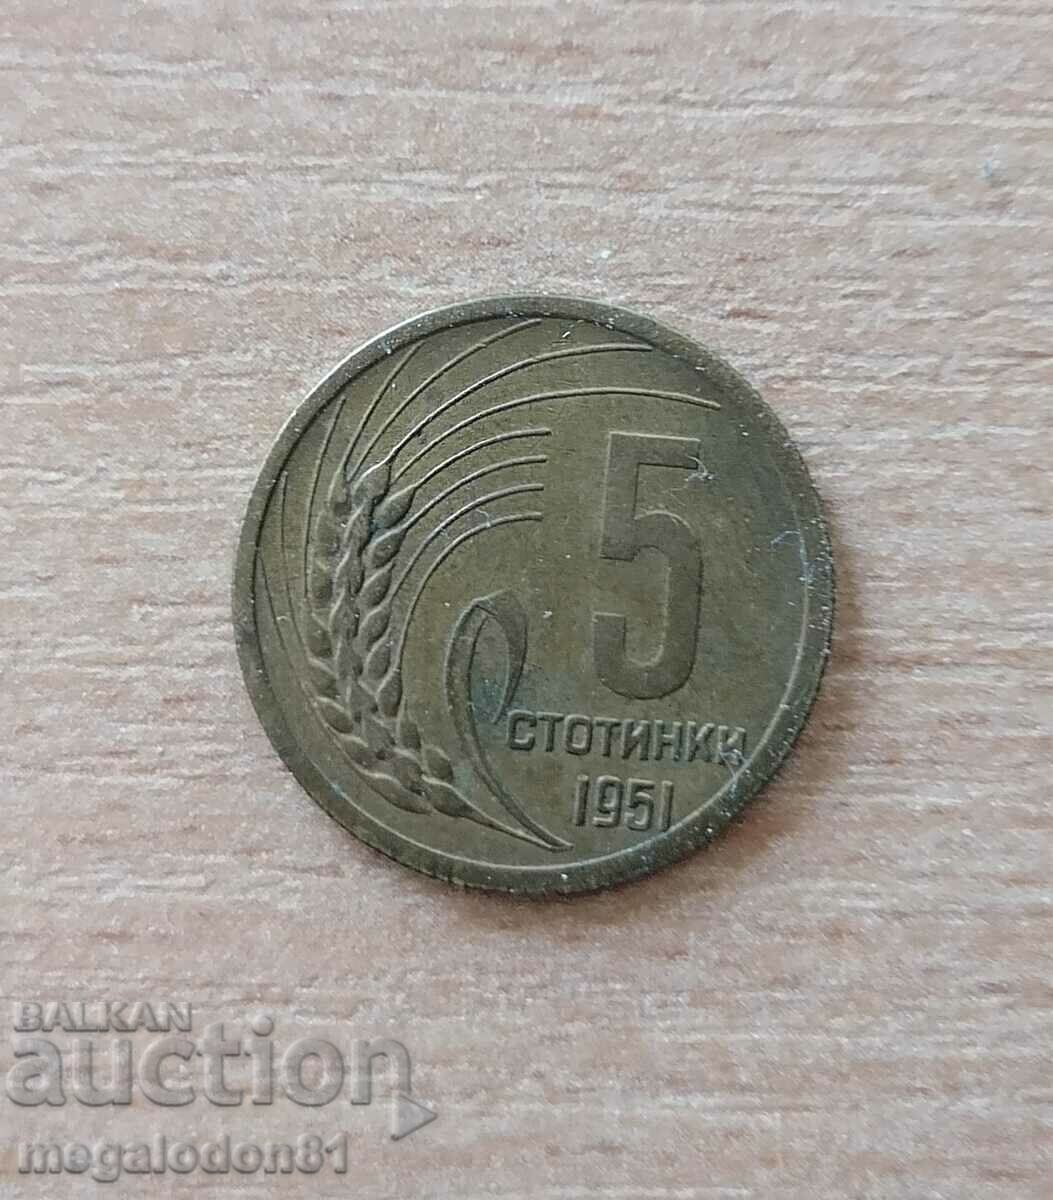 Βουλγαρία - 5 σεντς 1951